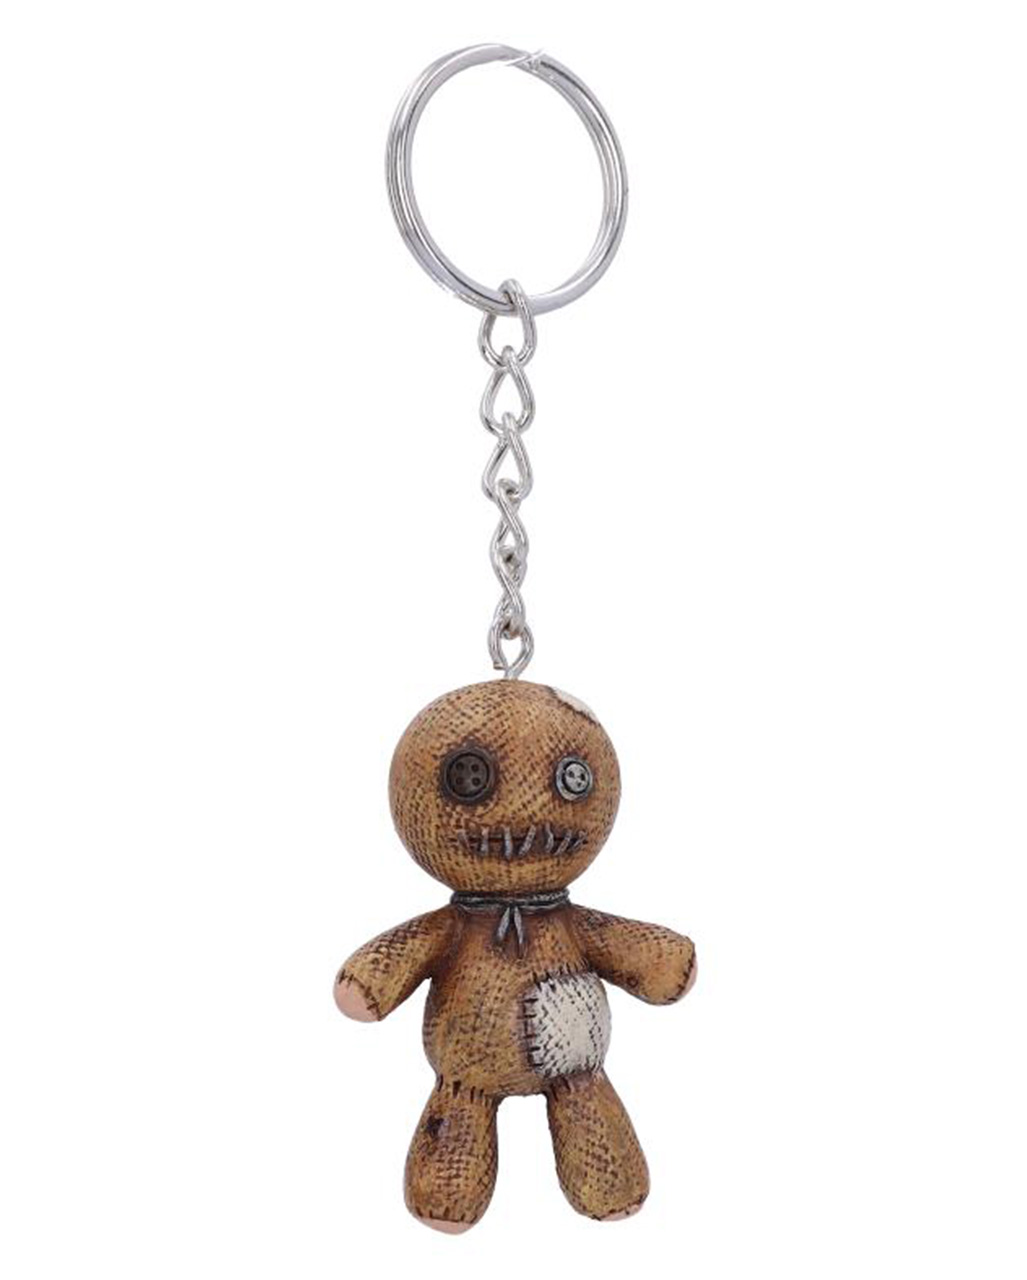 Voodoo doll keychain